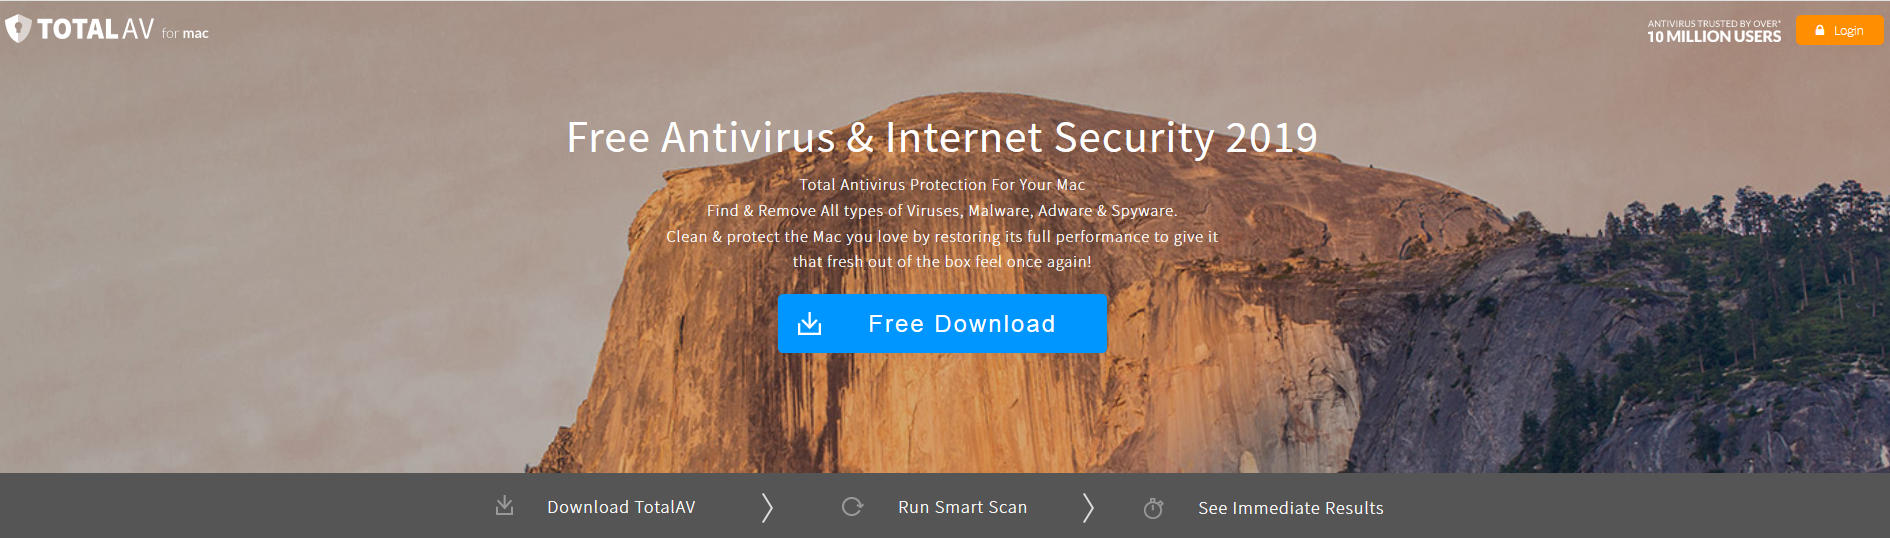 total av antivirus for mac review